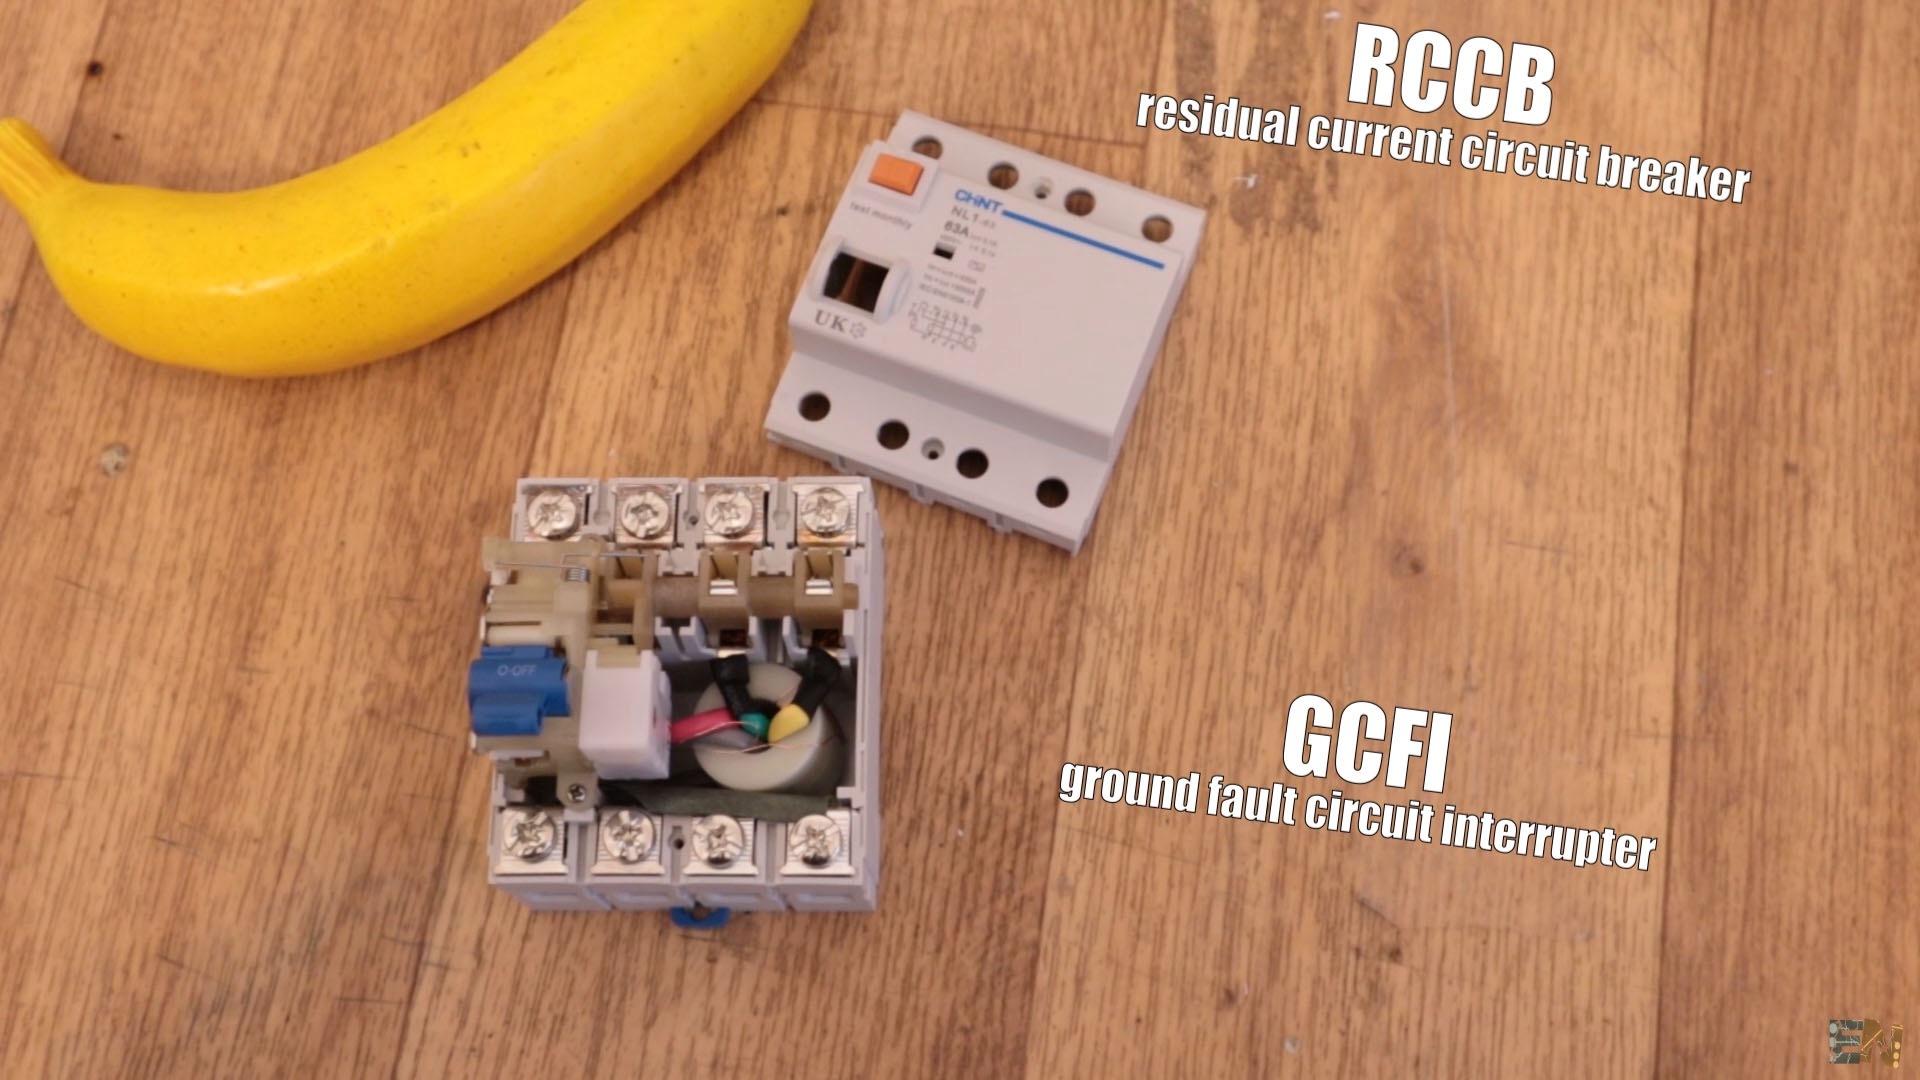 what is inside an RCCB residual circuit breaker?